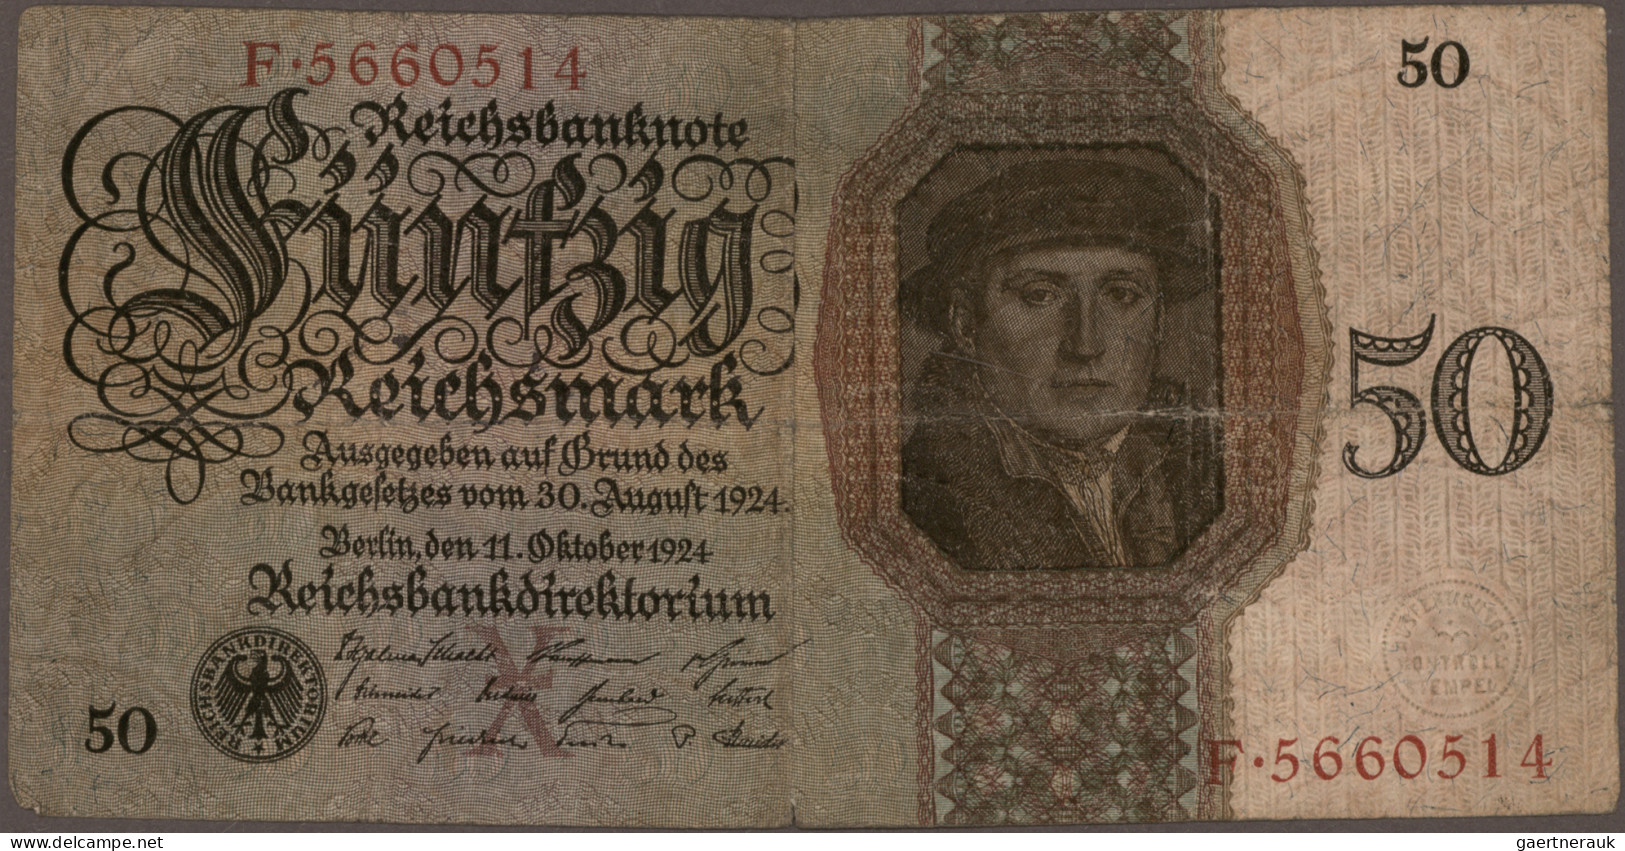 Deutschland - Deutsches Reich bis 1945: Schachtel mit mehr als 1.300 Banknoten D